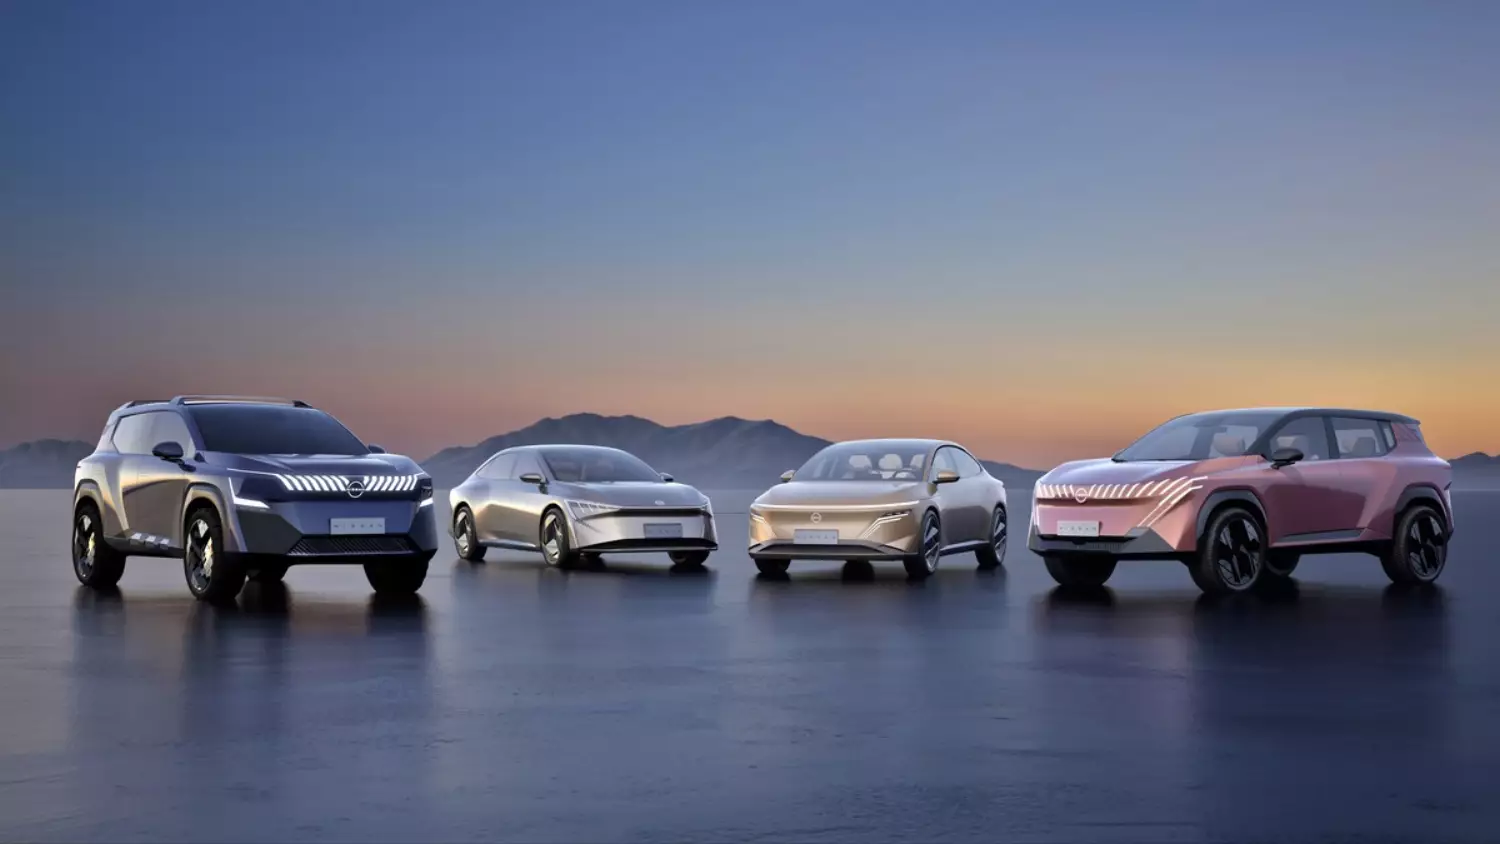 Nissan pokazał cztery nowe samochody. To Epoch, Epic, Era i Evo